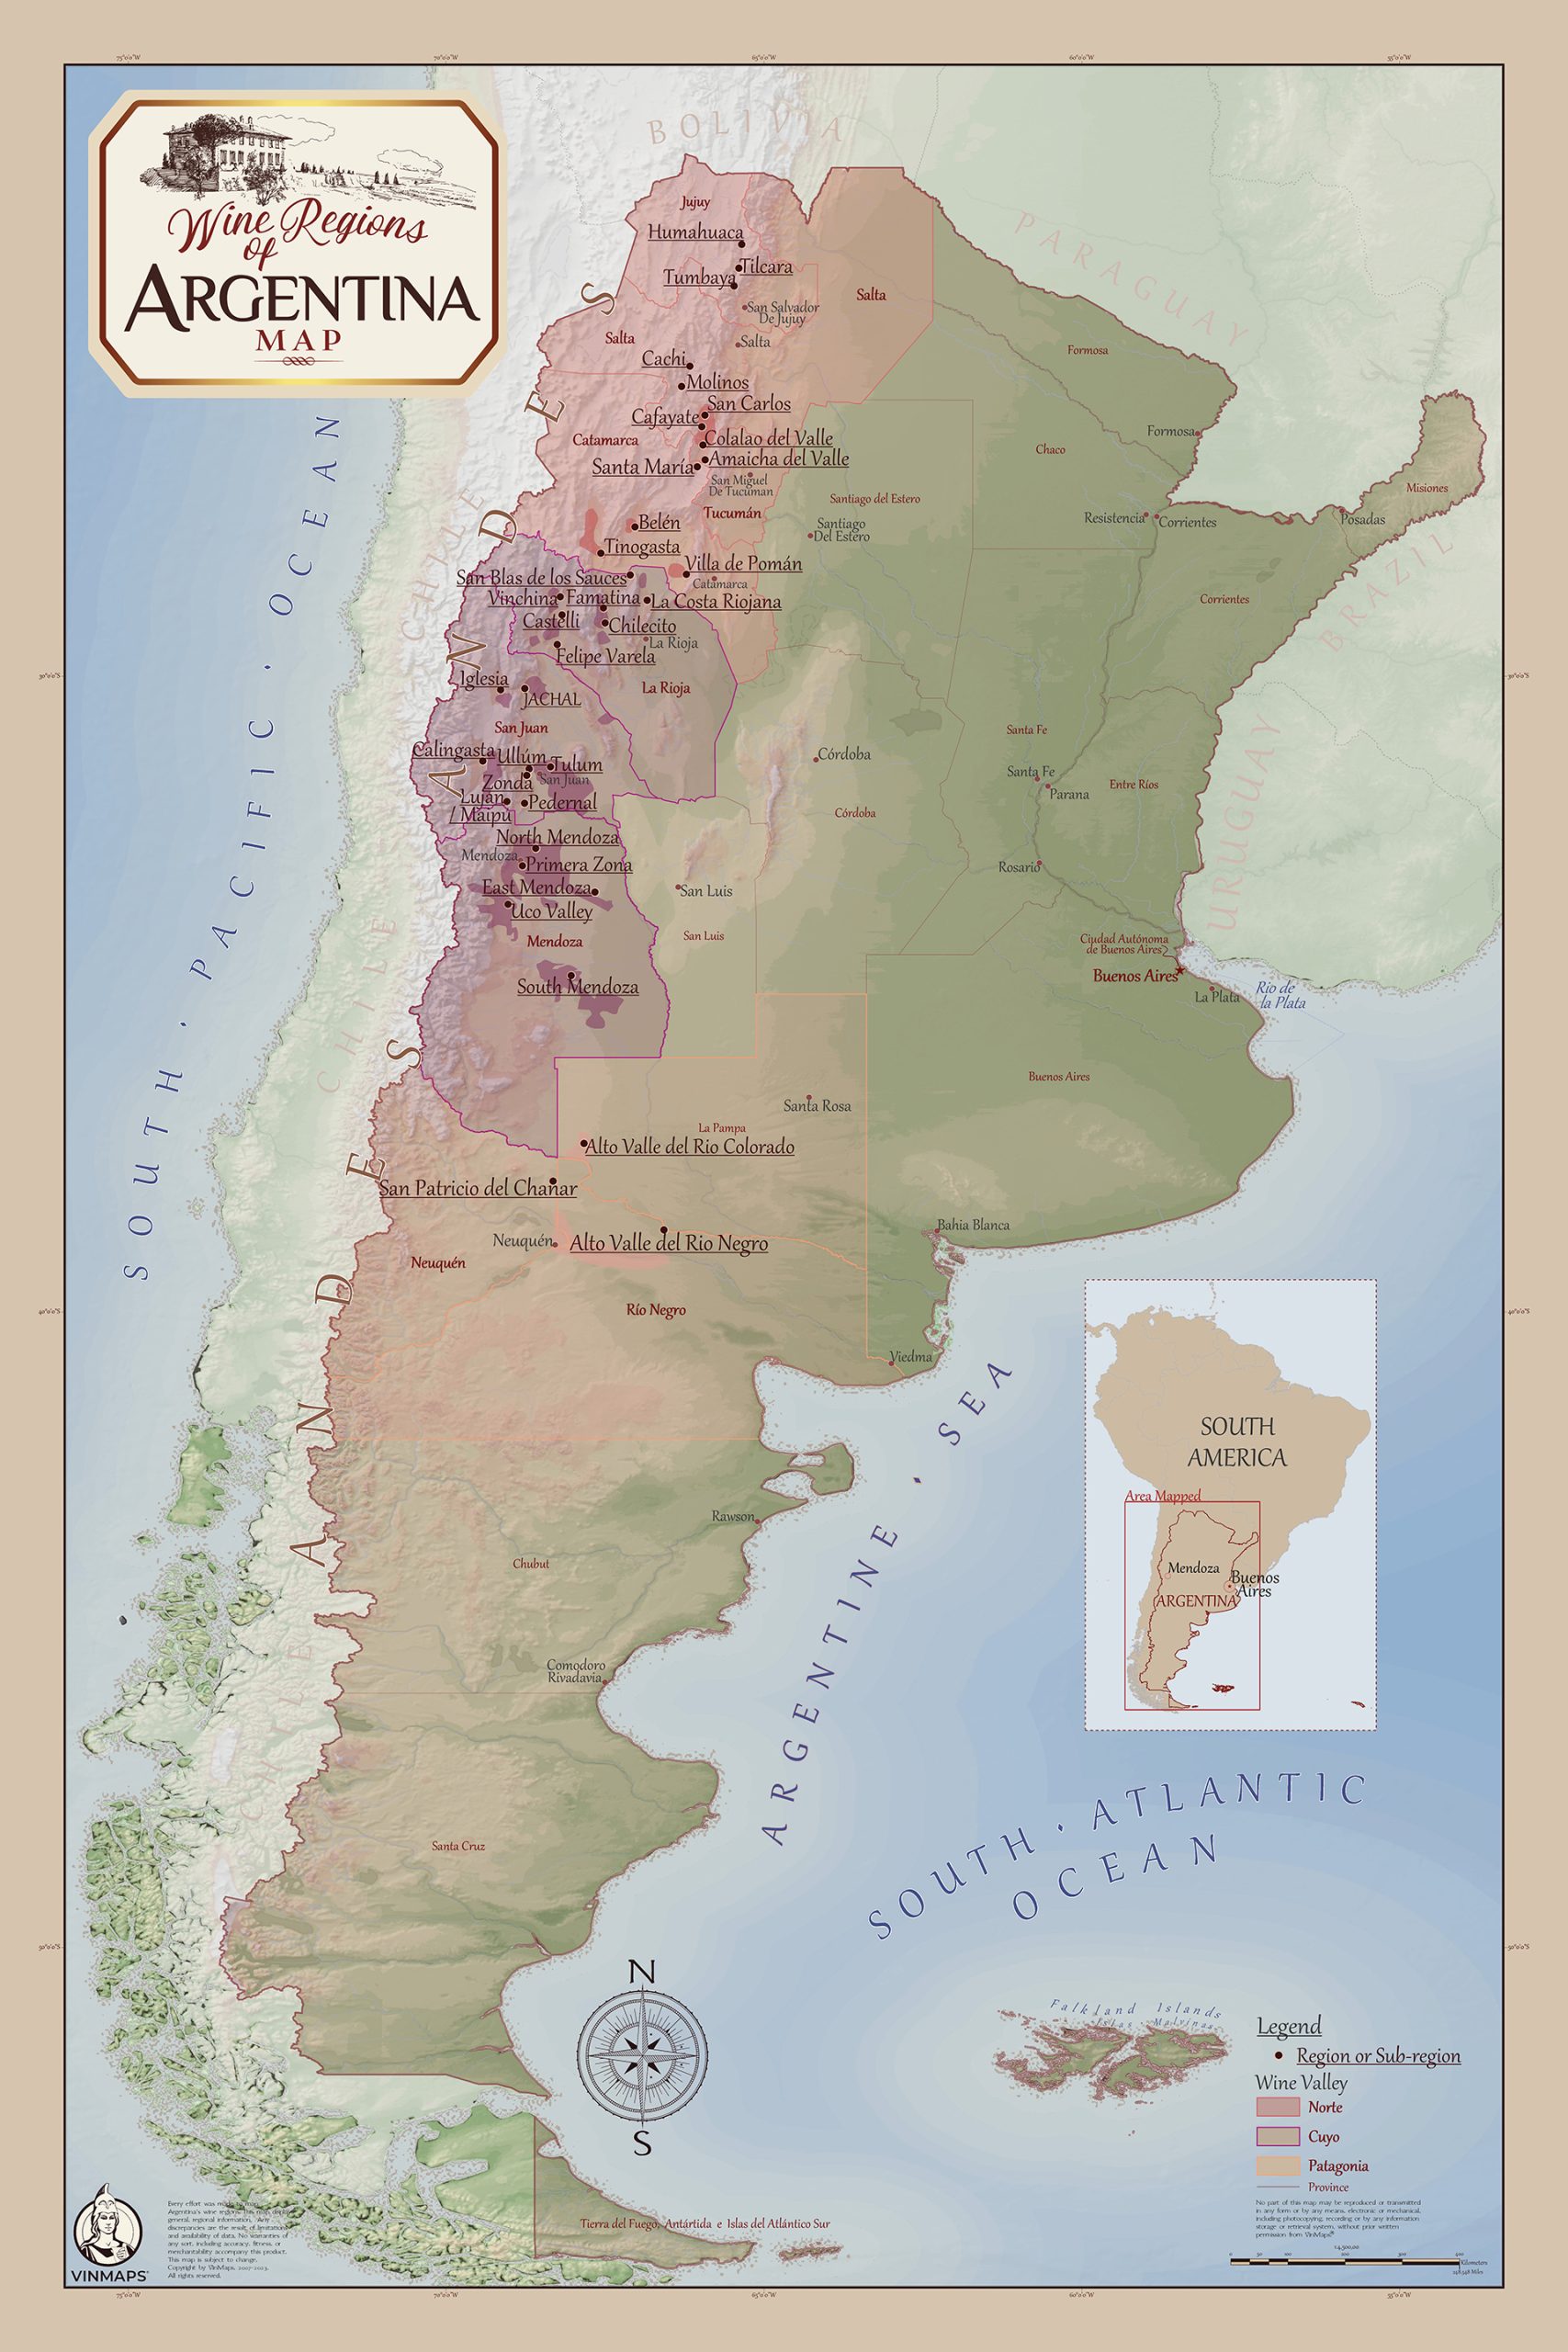 Argentine Wine Regions Map